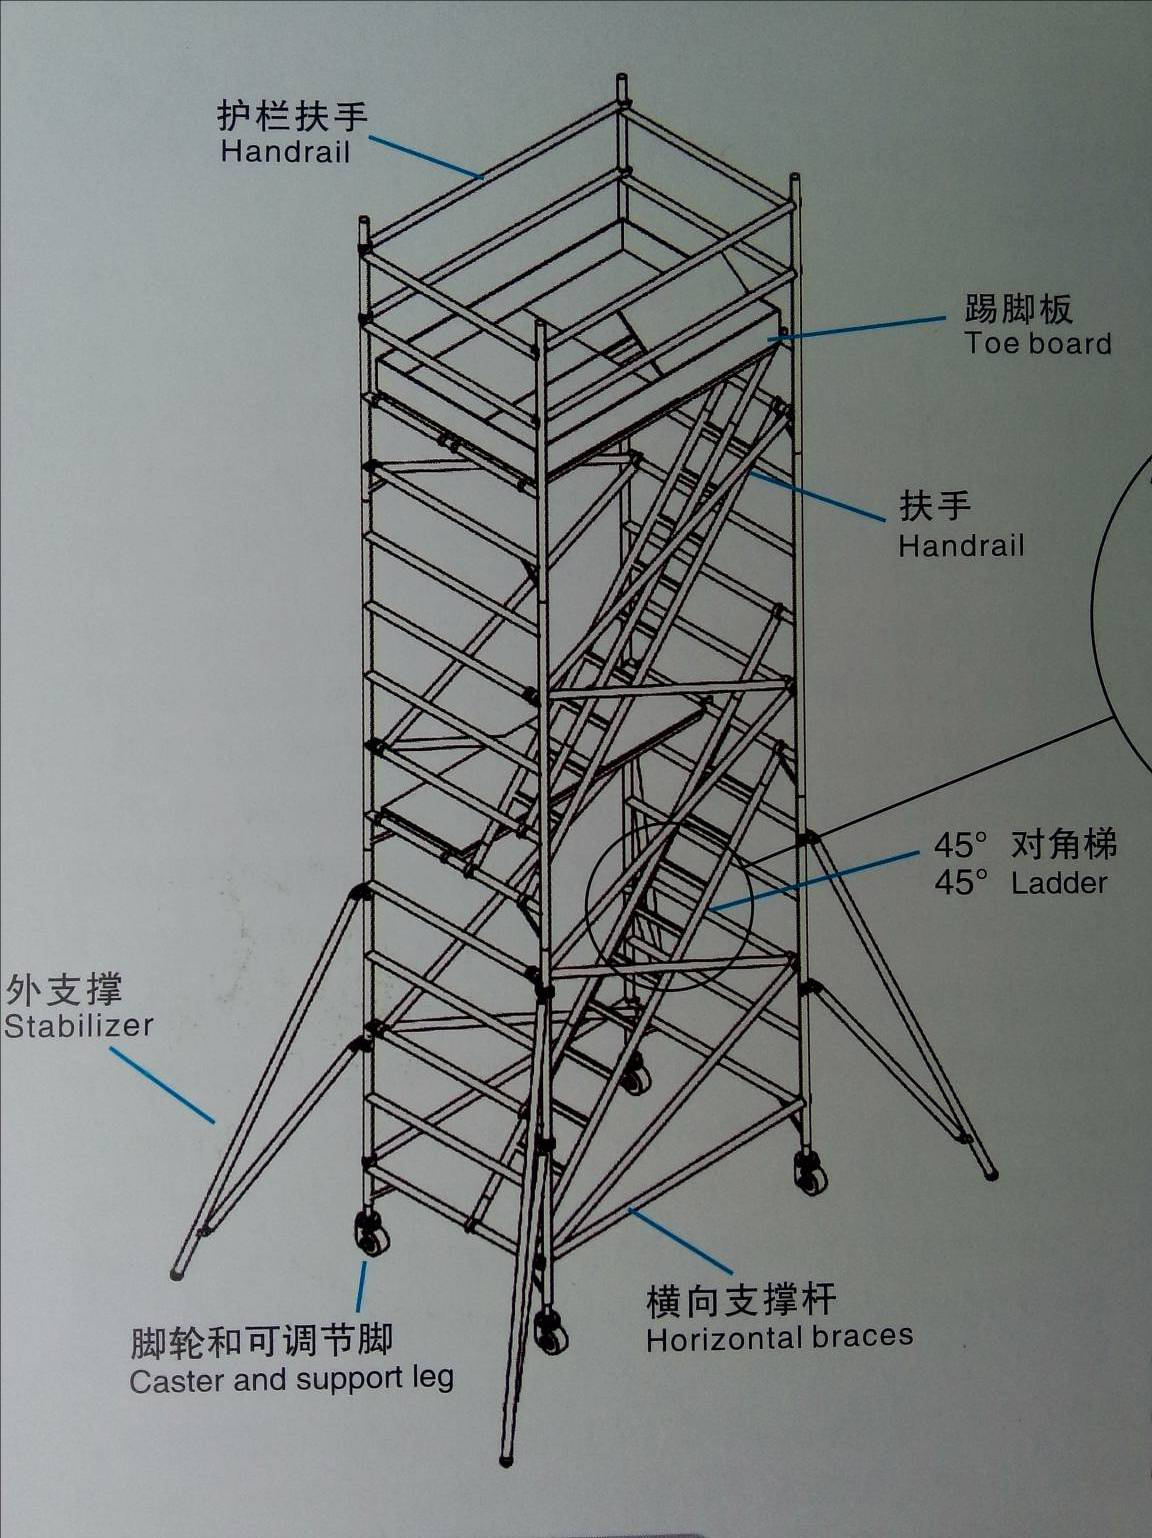 脚手架安装说明》;《关于20m塔架架构重点说明》,《20m塔架结构图纸》